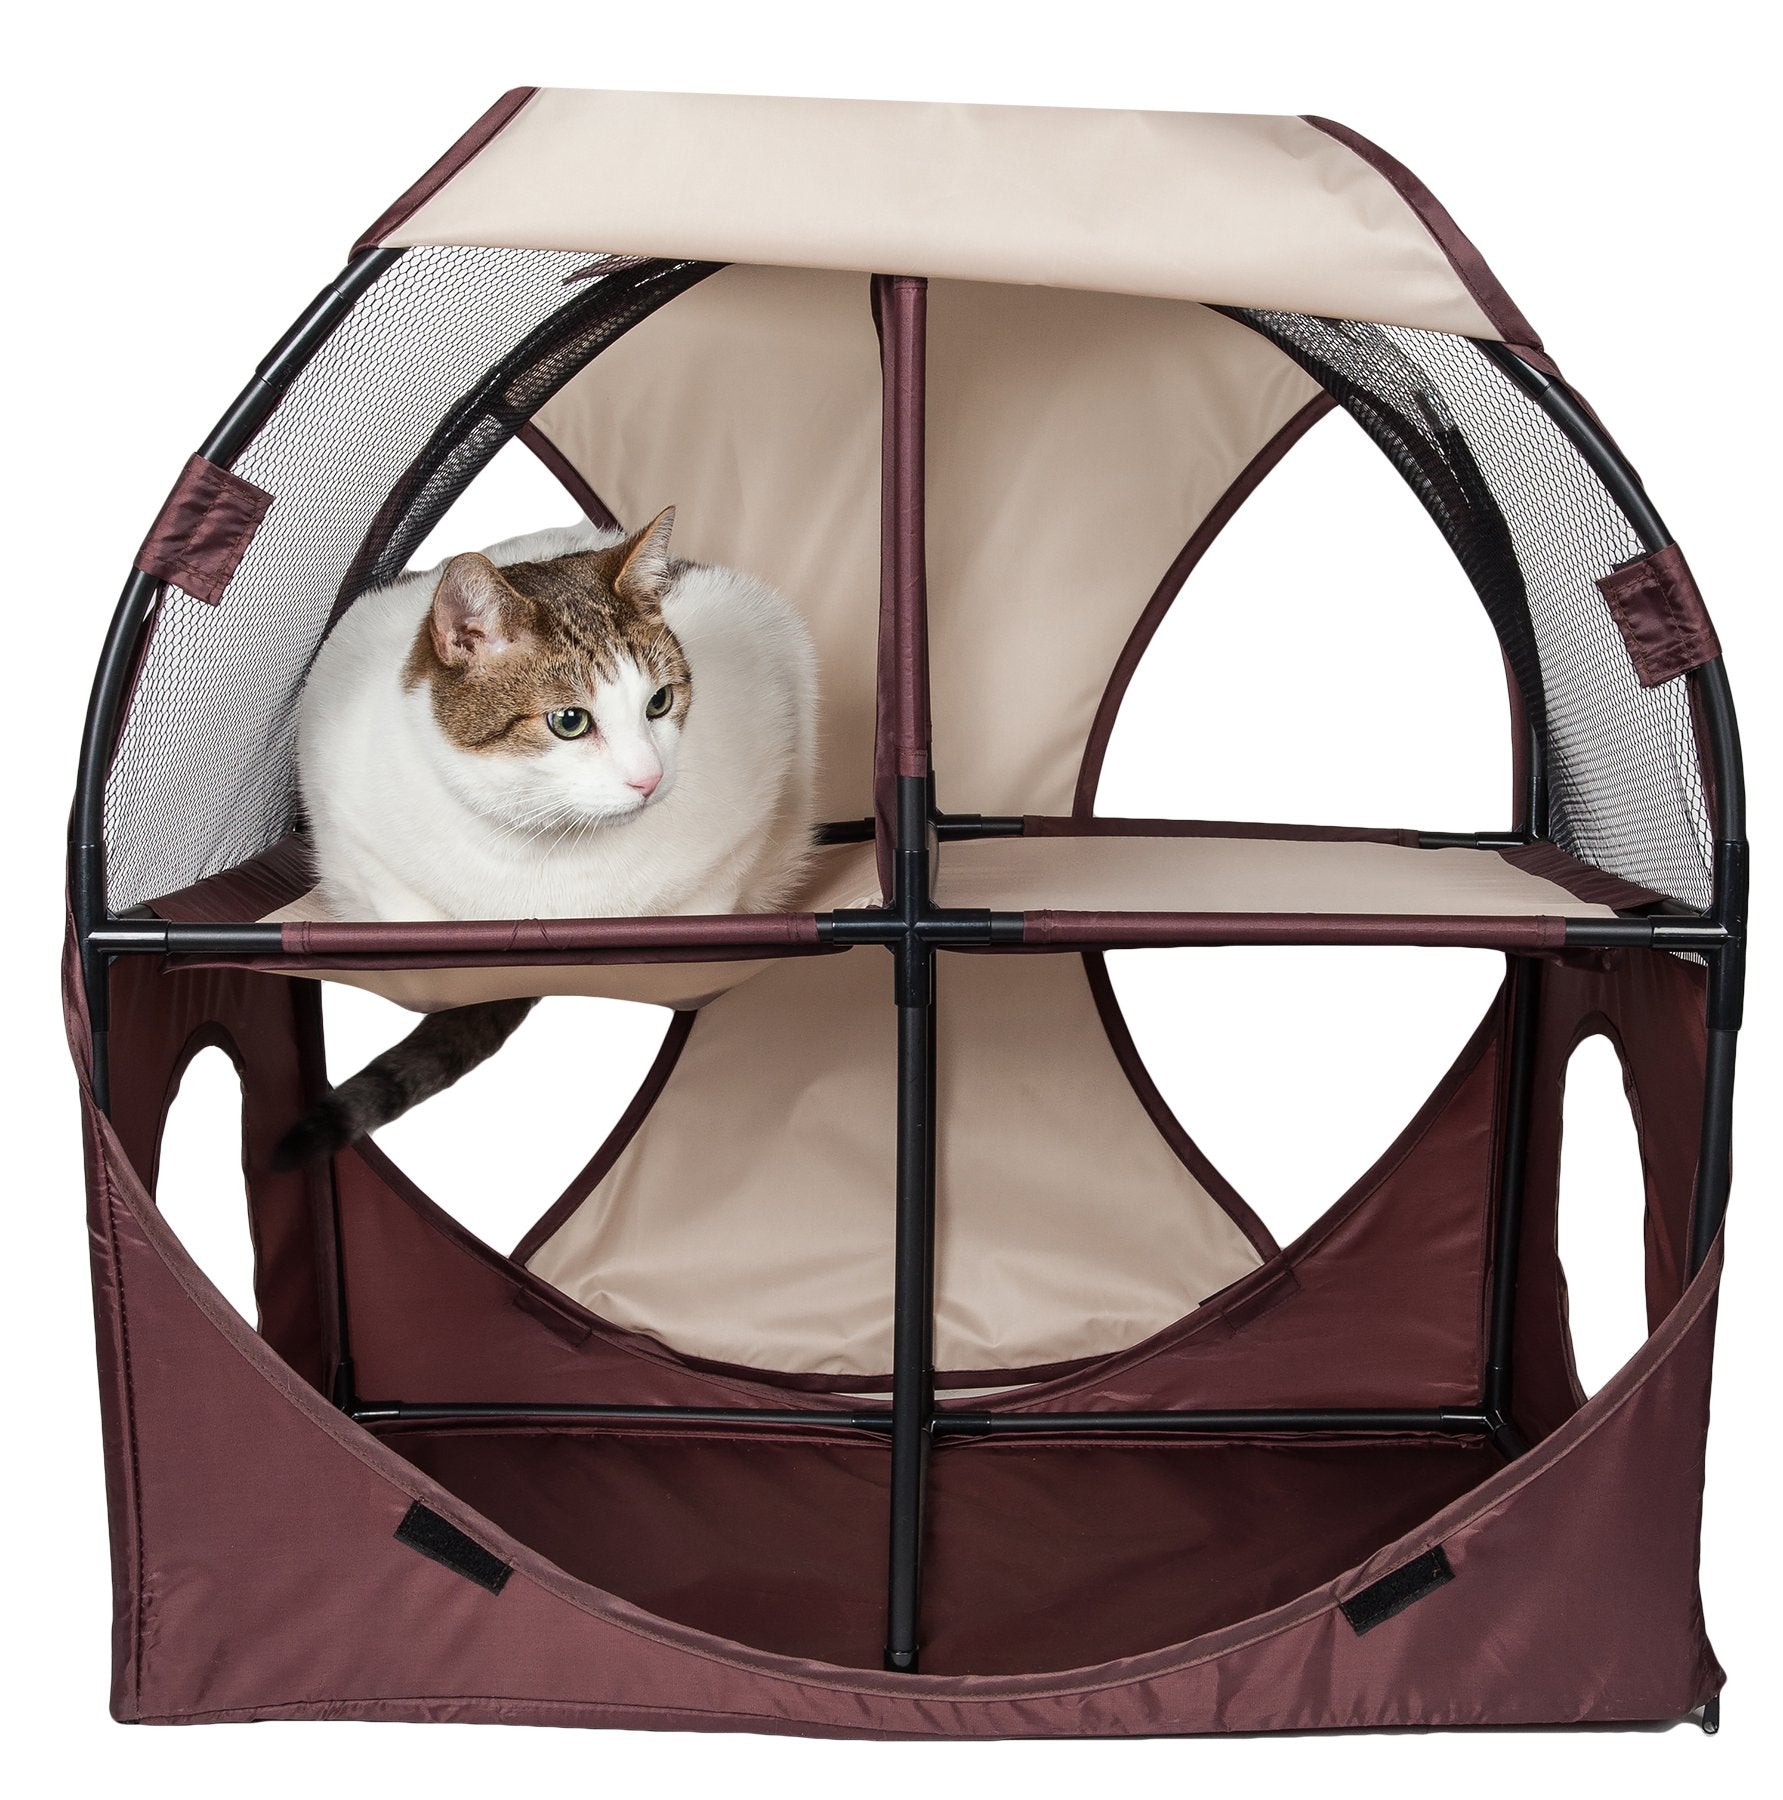 Pet Life Kitty-Play Travel Cat House - Gray